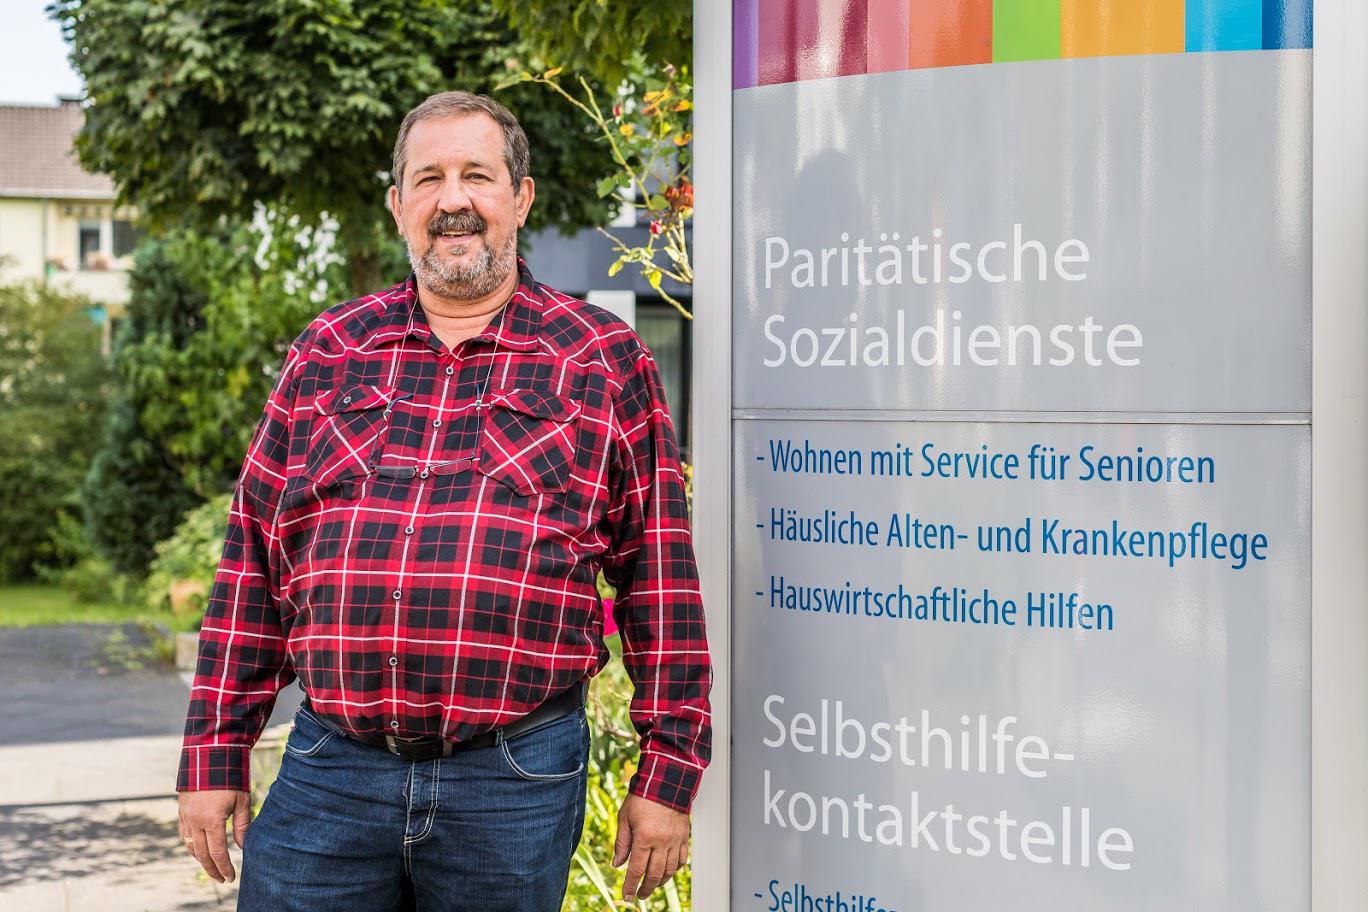 Paritätische Sozialdienste gemeinnützige GmbH